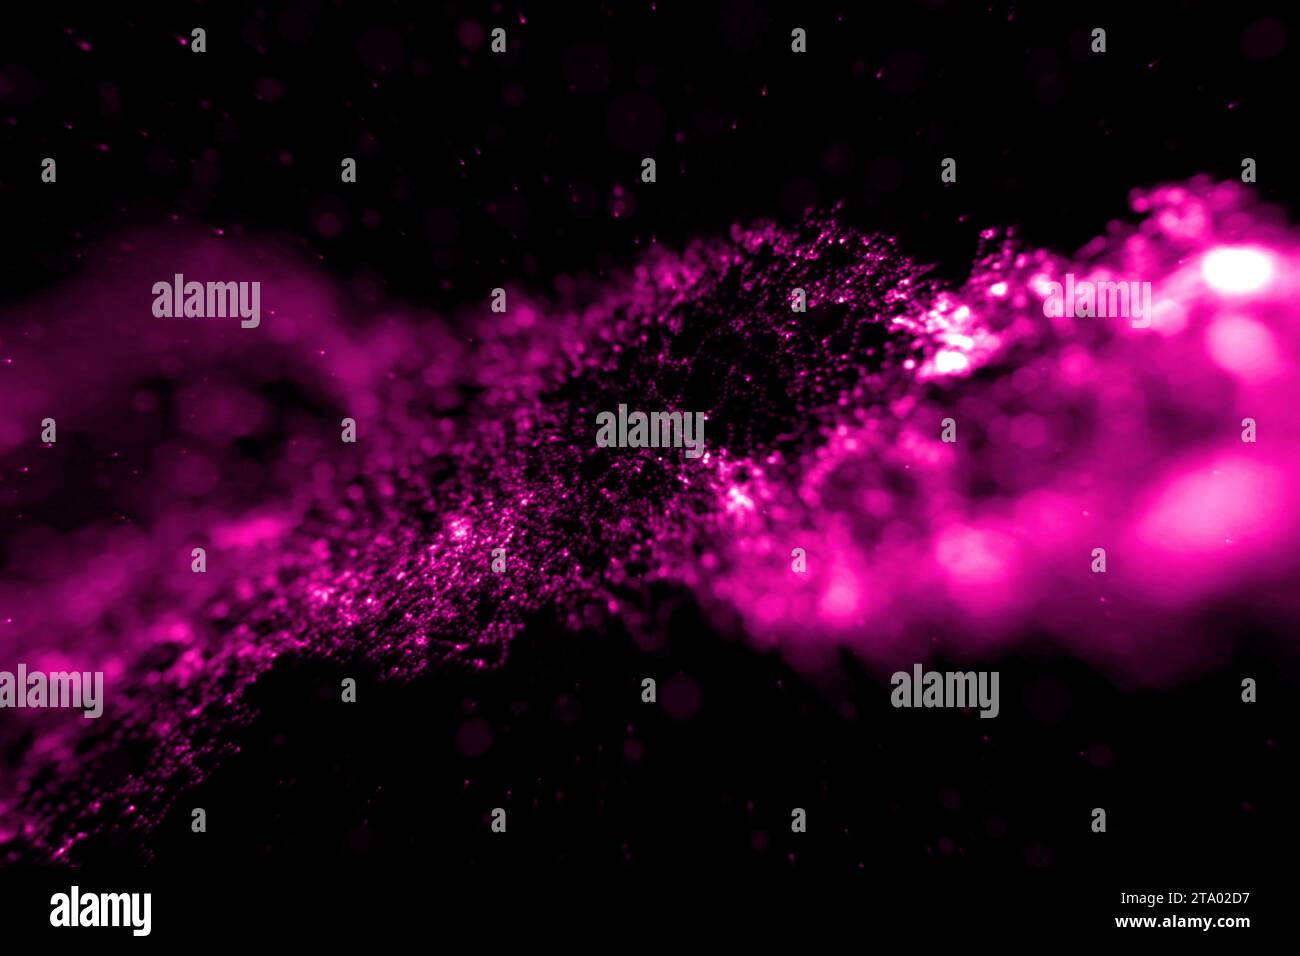 Abstraktes Stream Array farbenfrohe Glitzer glitzernde rosa und lila Linien mit Partikeln auf schwarzem Hintergrund Wissenschafts- und Forschungstechnologie-Konzept Stockfoto